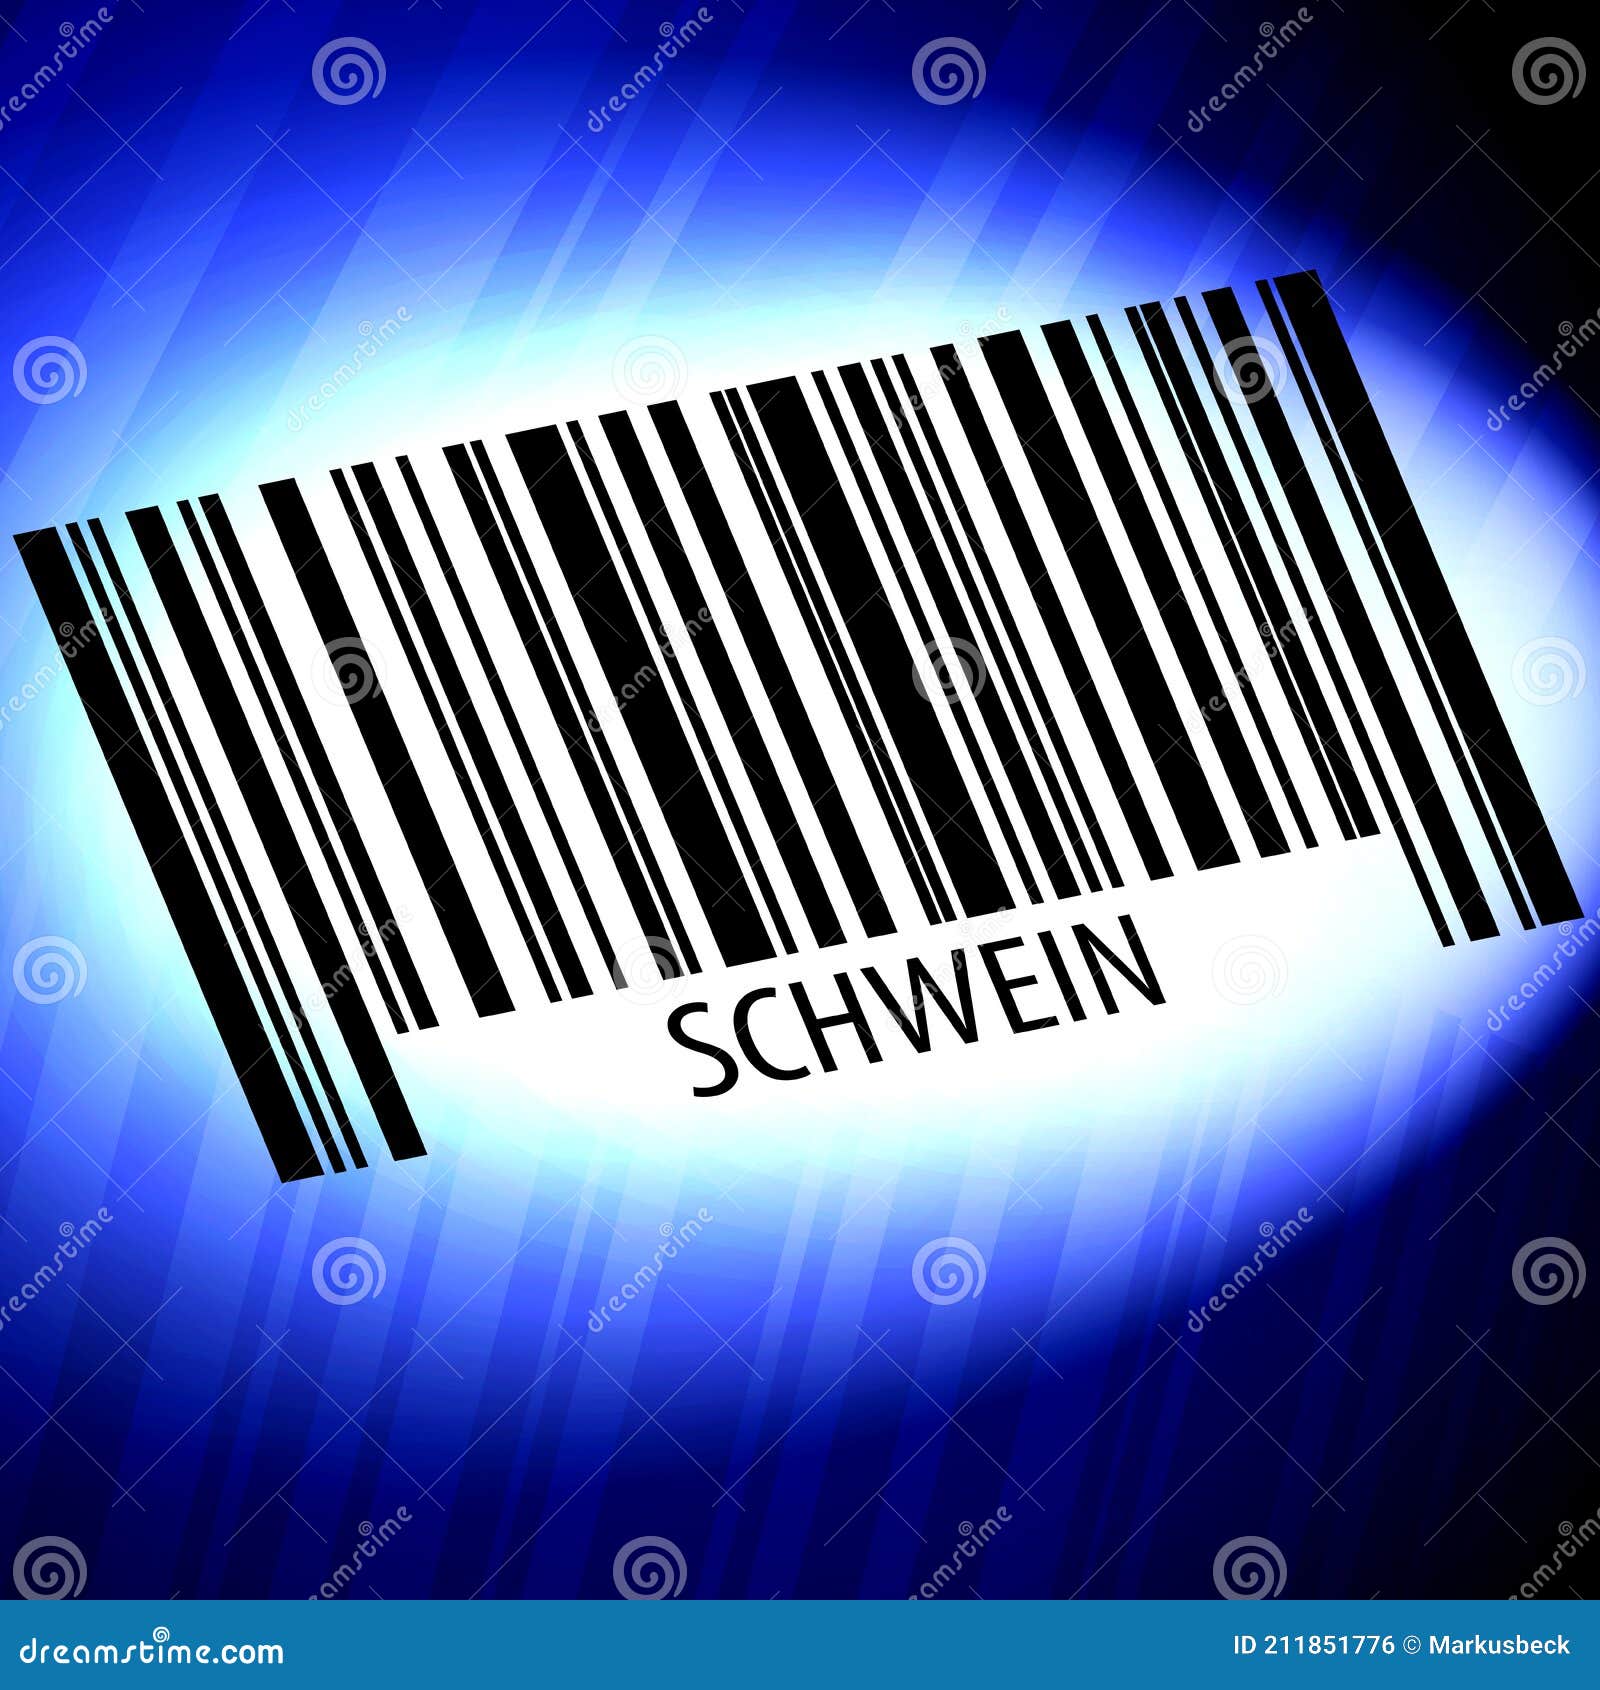 schwein - barcode with futuristic blue background